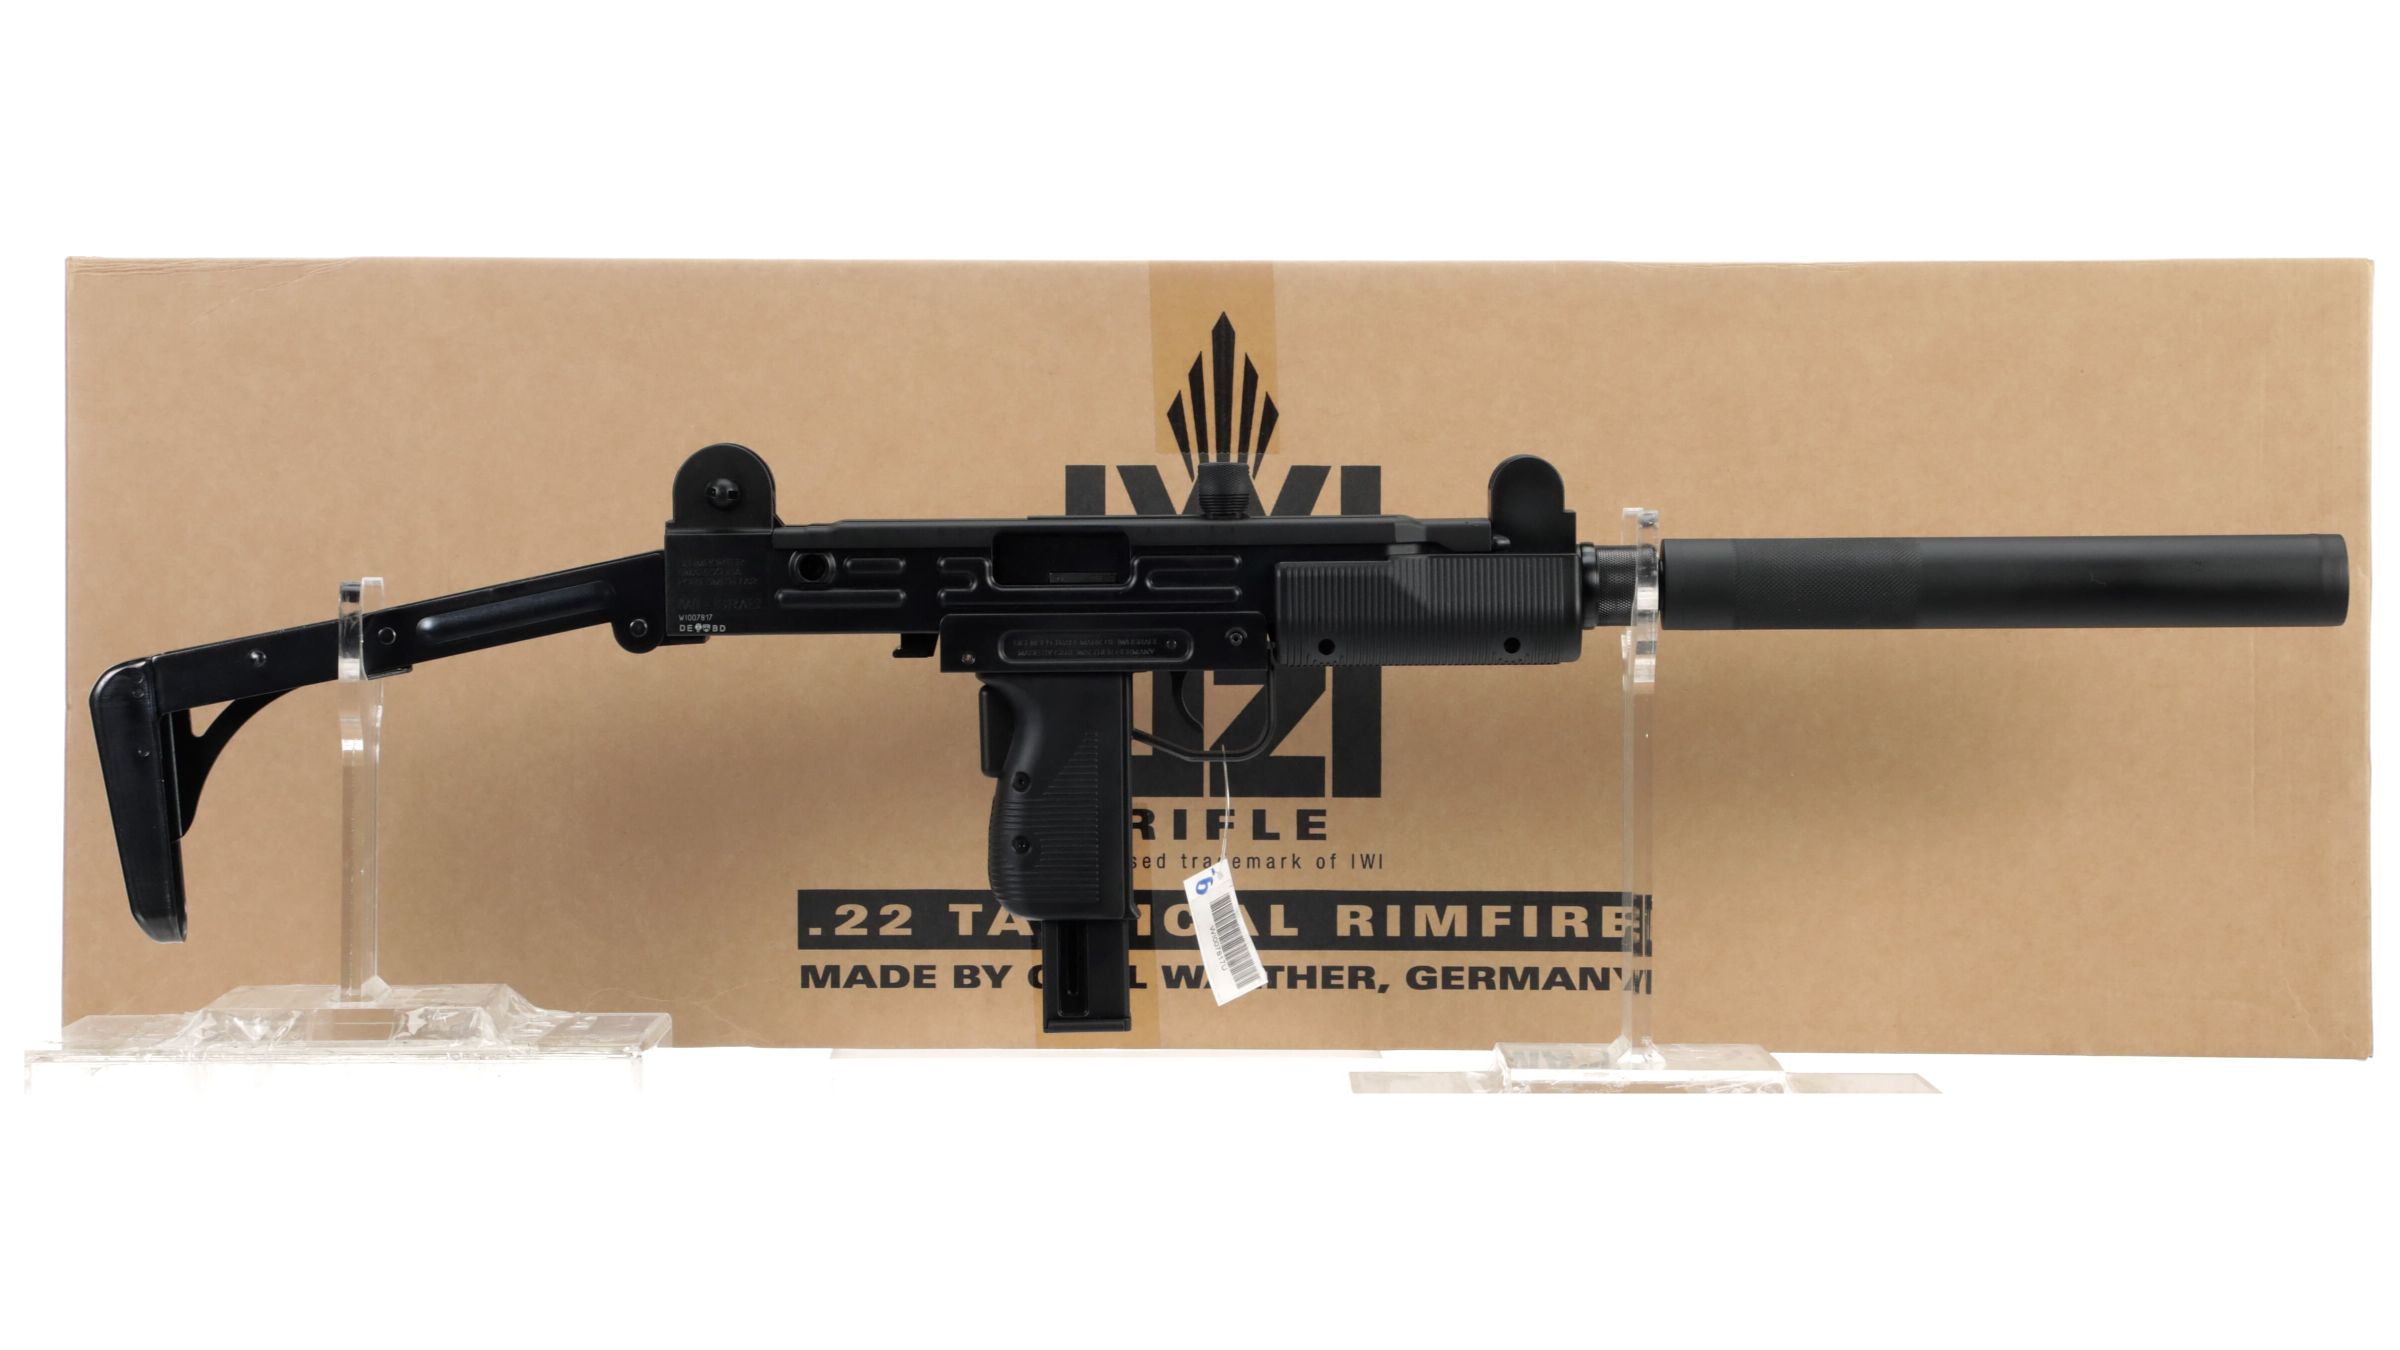 Walther/IWI UZI Semi-Automatic Rifle with Box | Rock Island Auction